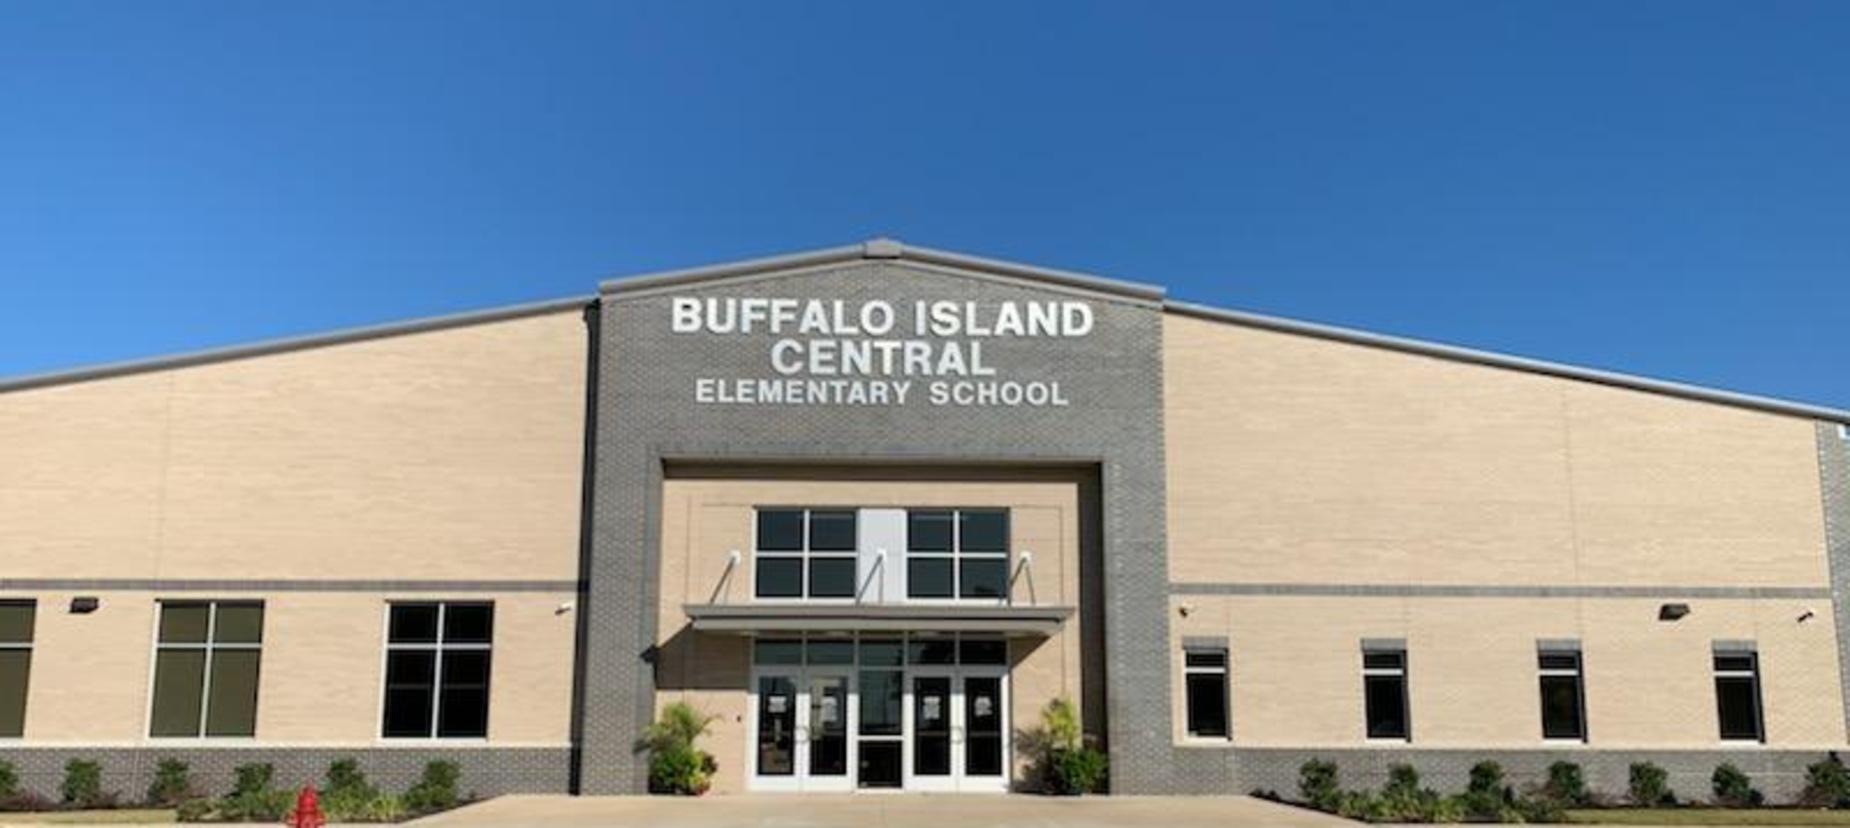 Buffalo Island Central Elementary School